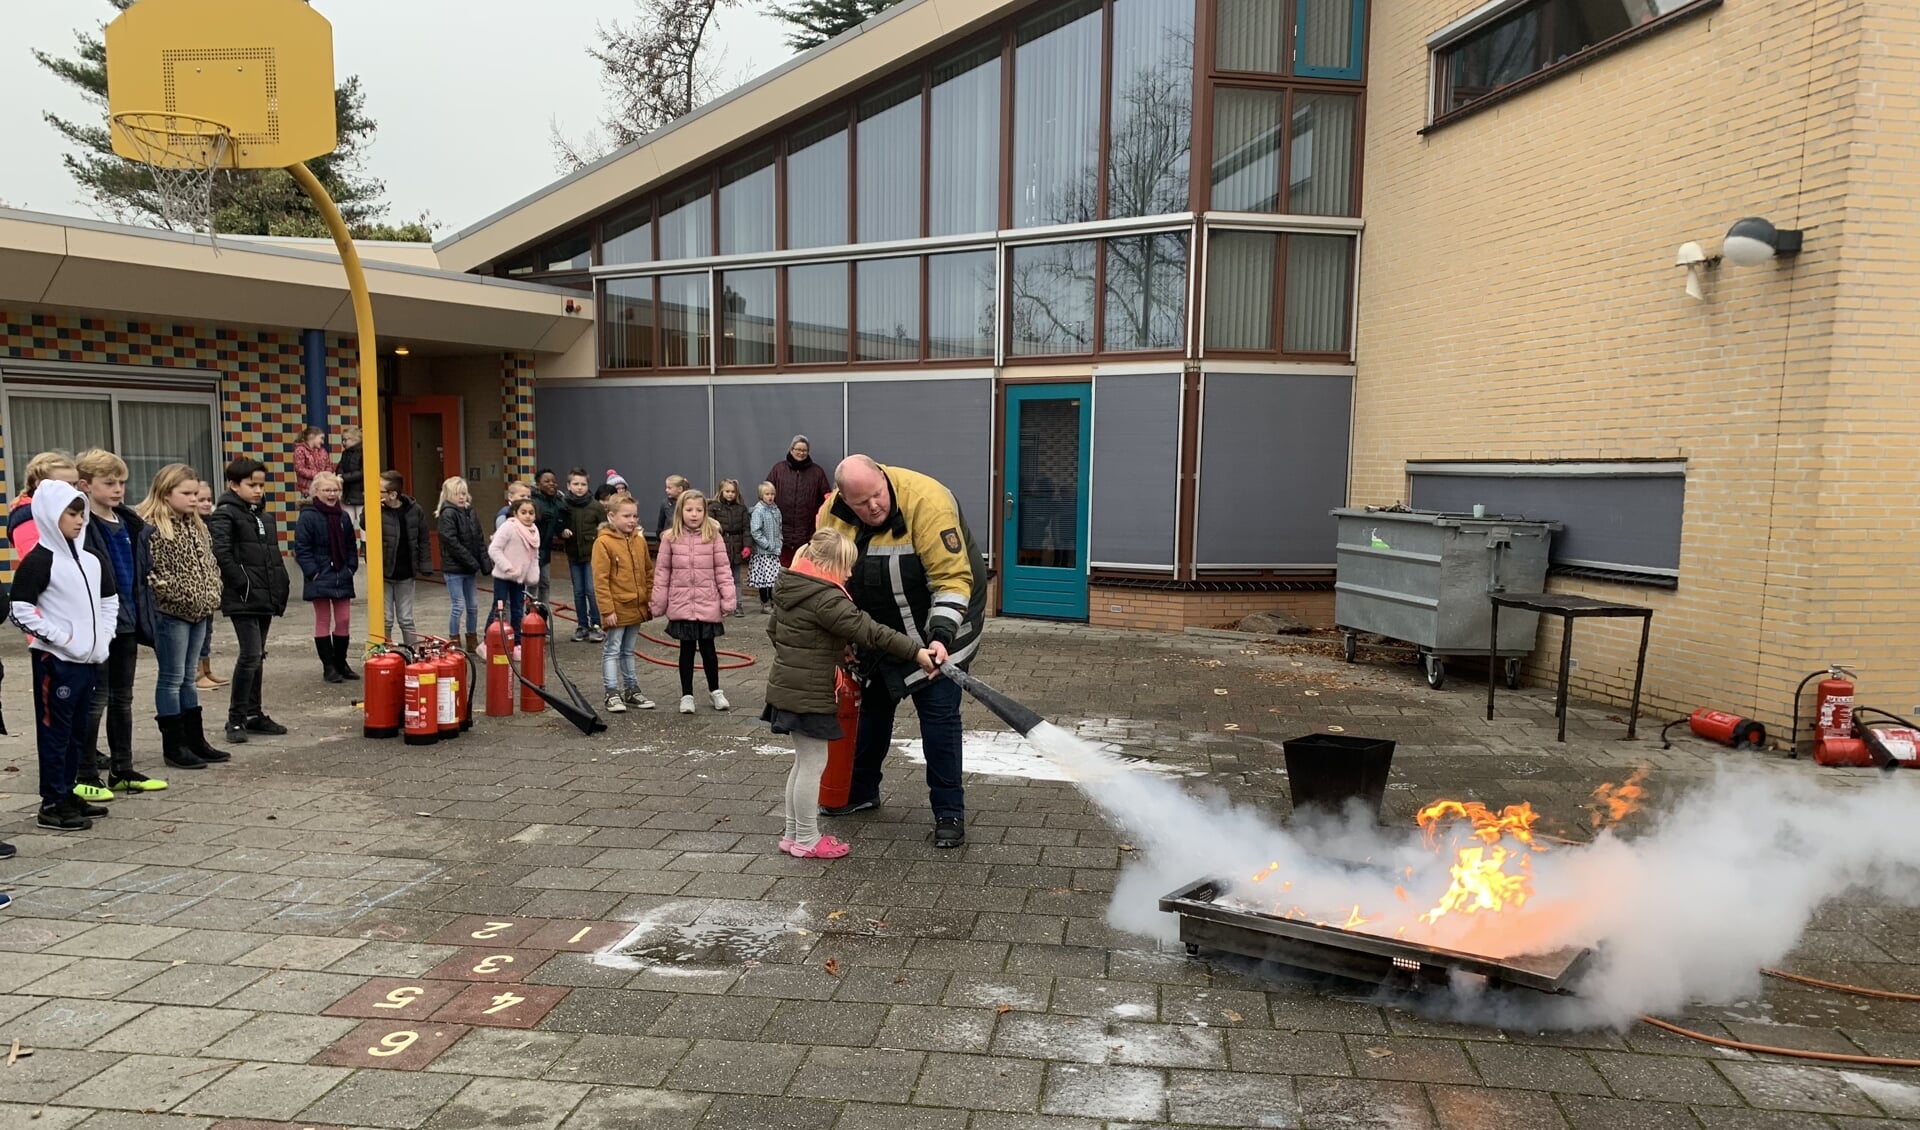 Koepelschoolkinderen leren brandjes te blussen.